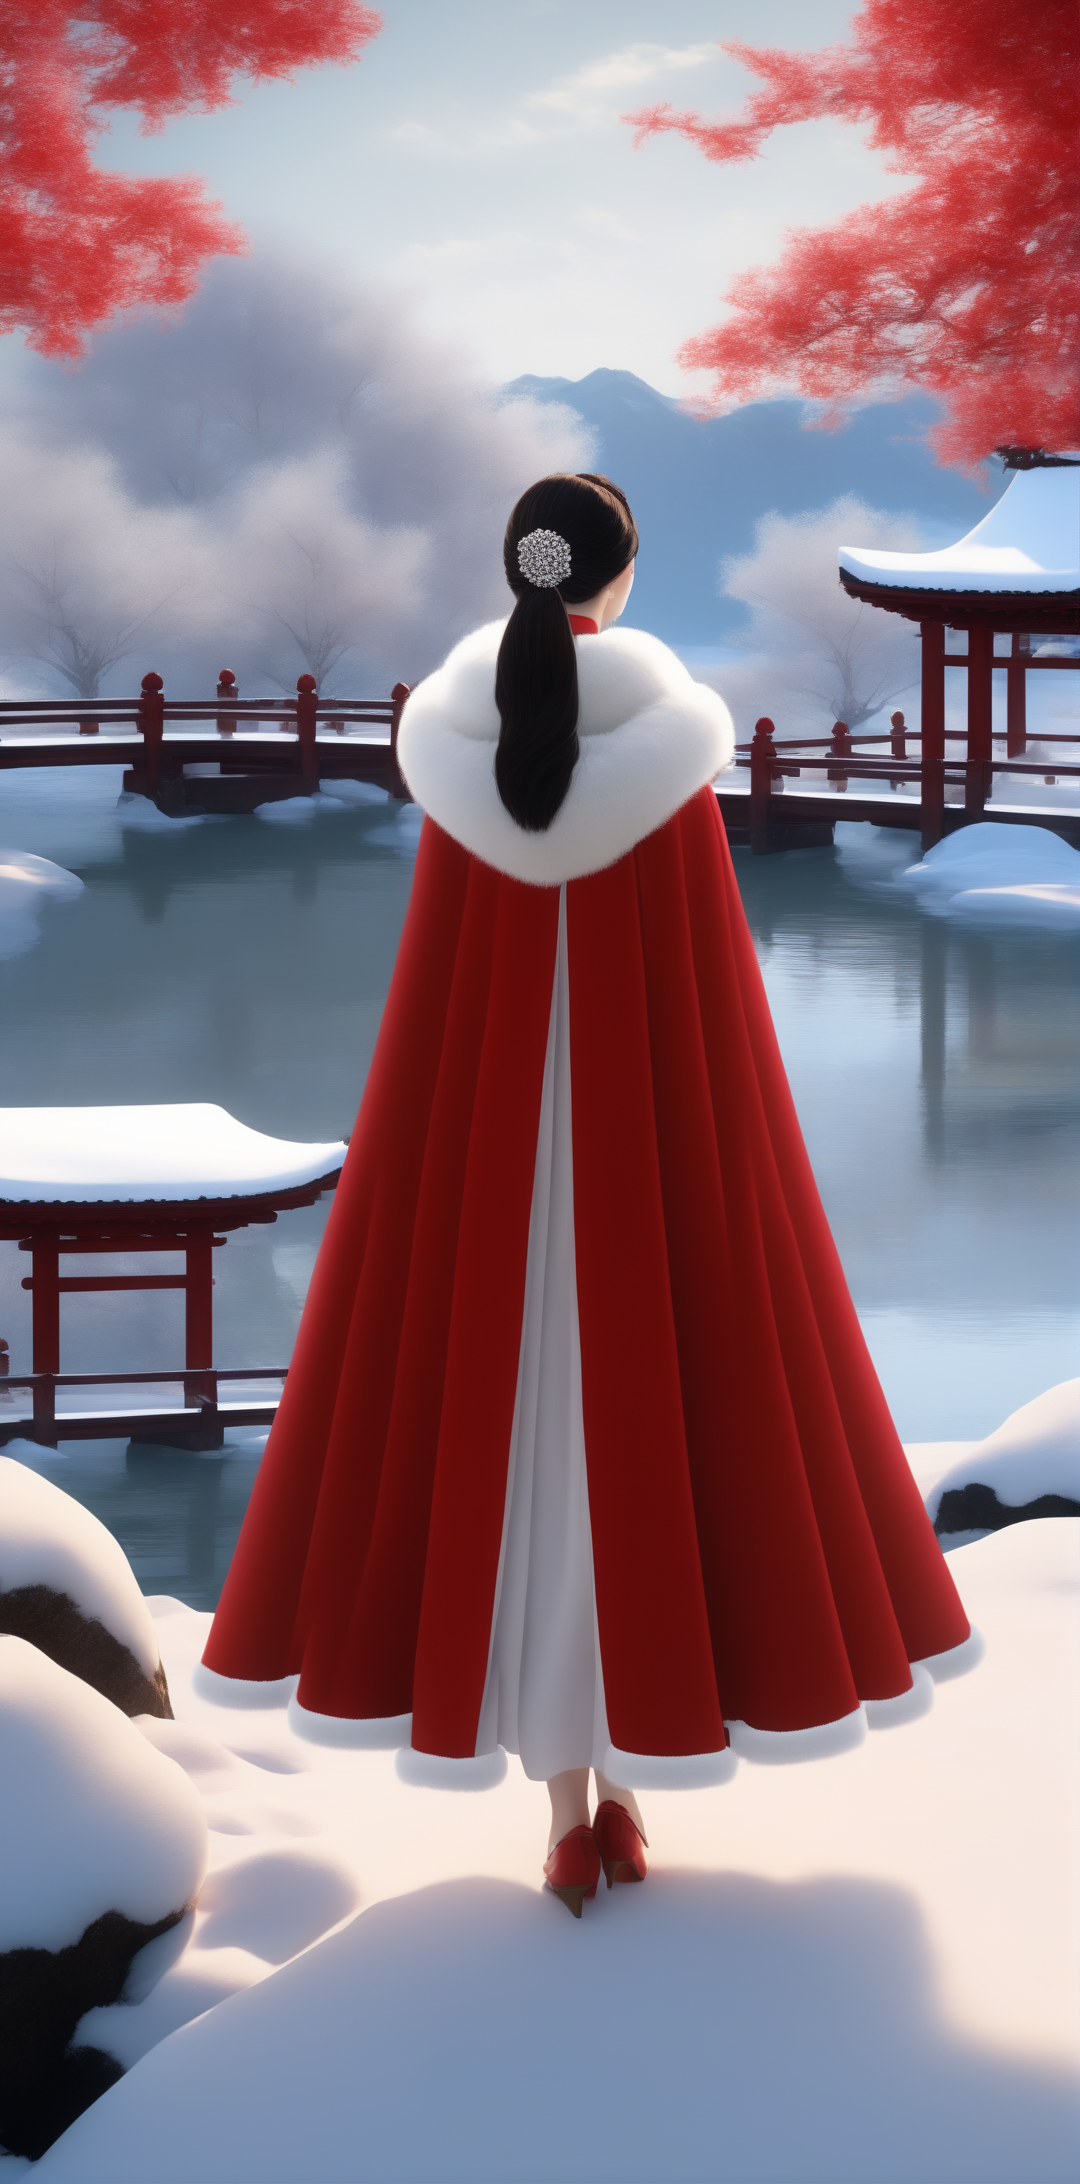 雪地里披着红色貂绒大披风的女孩2